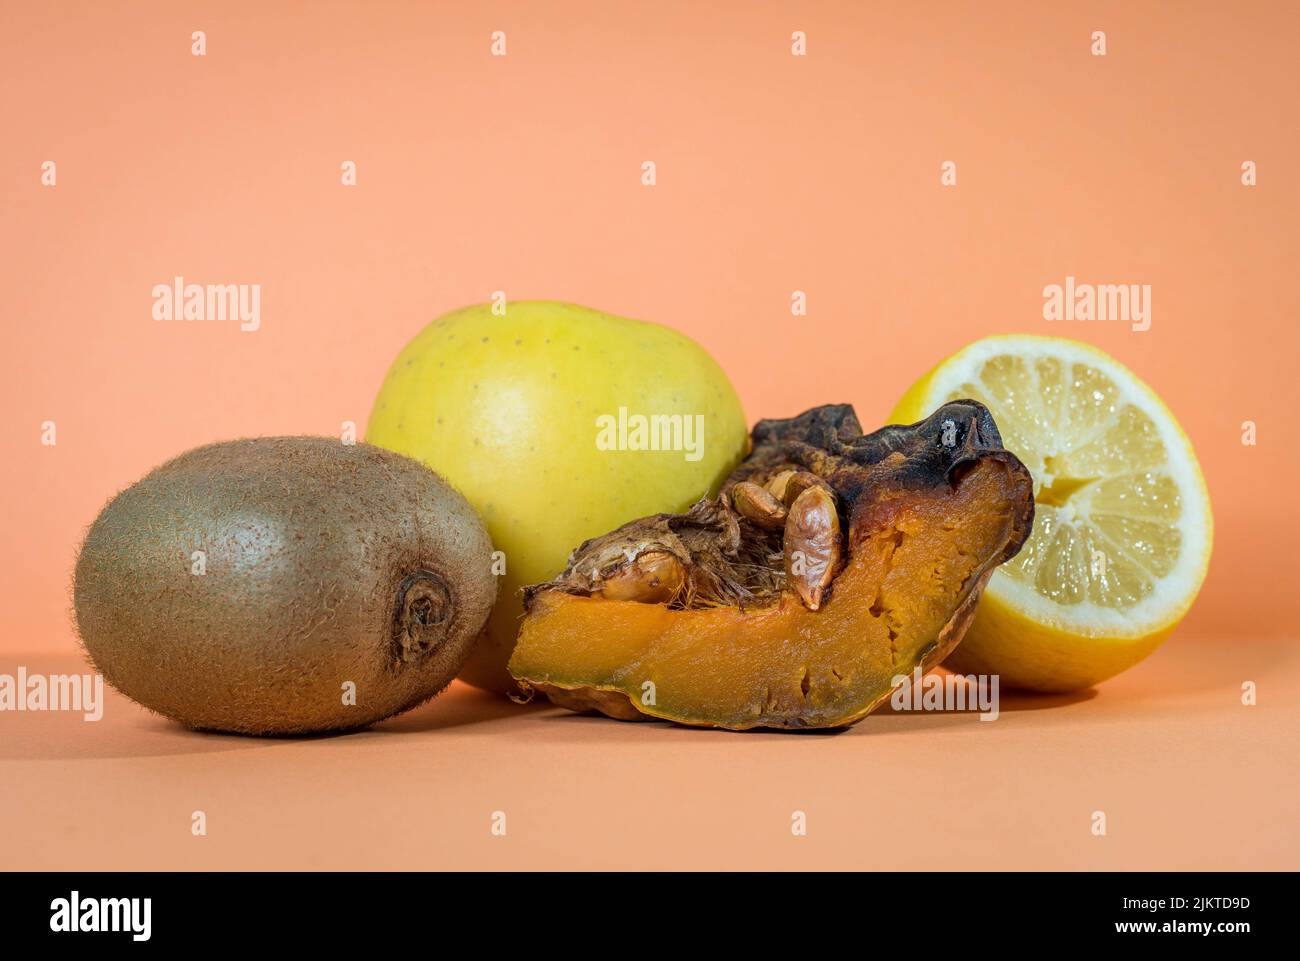 Immagine di isolato di frutta e limone delizioso, kiwi, mela e zucca al forno su uno sfondo arancione salmone rosa. Concetto di cibo sano. Foto Stock